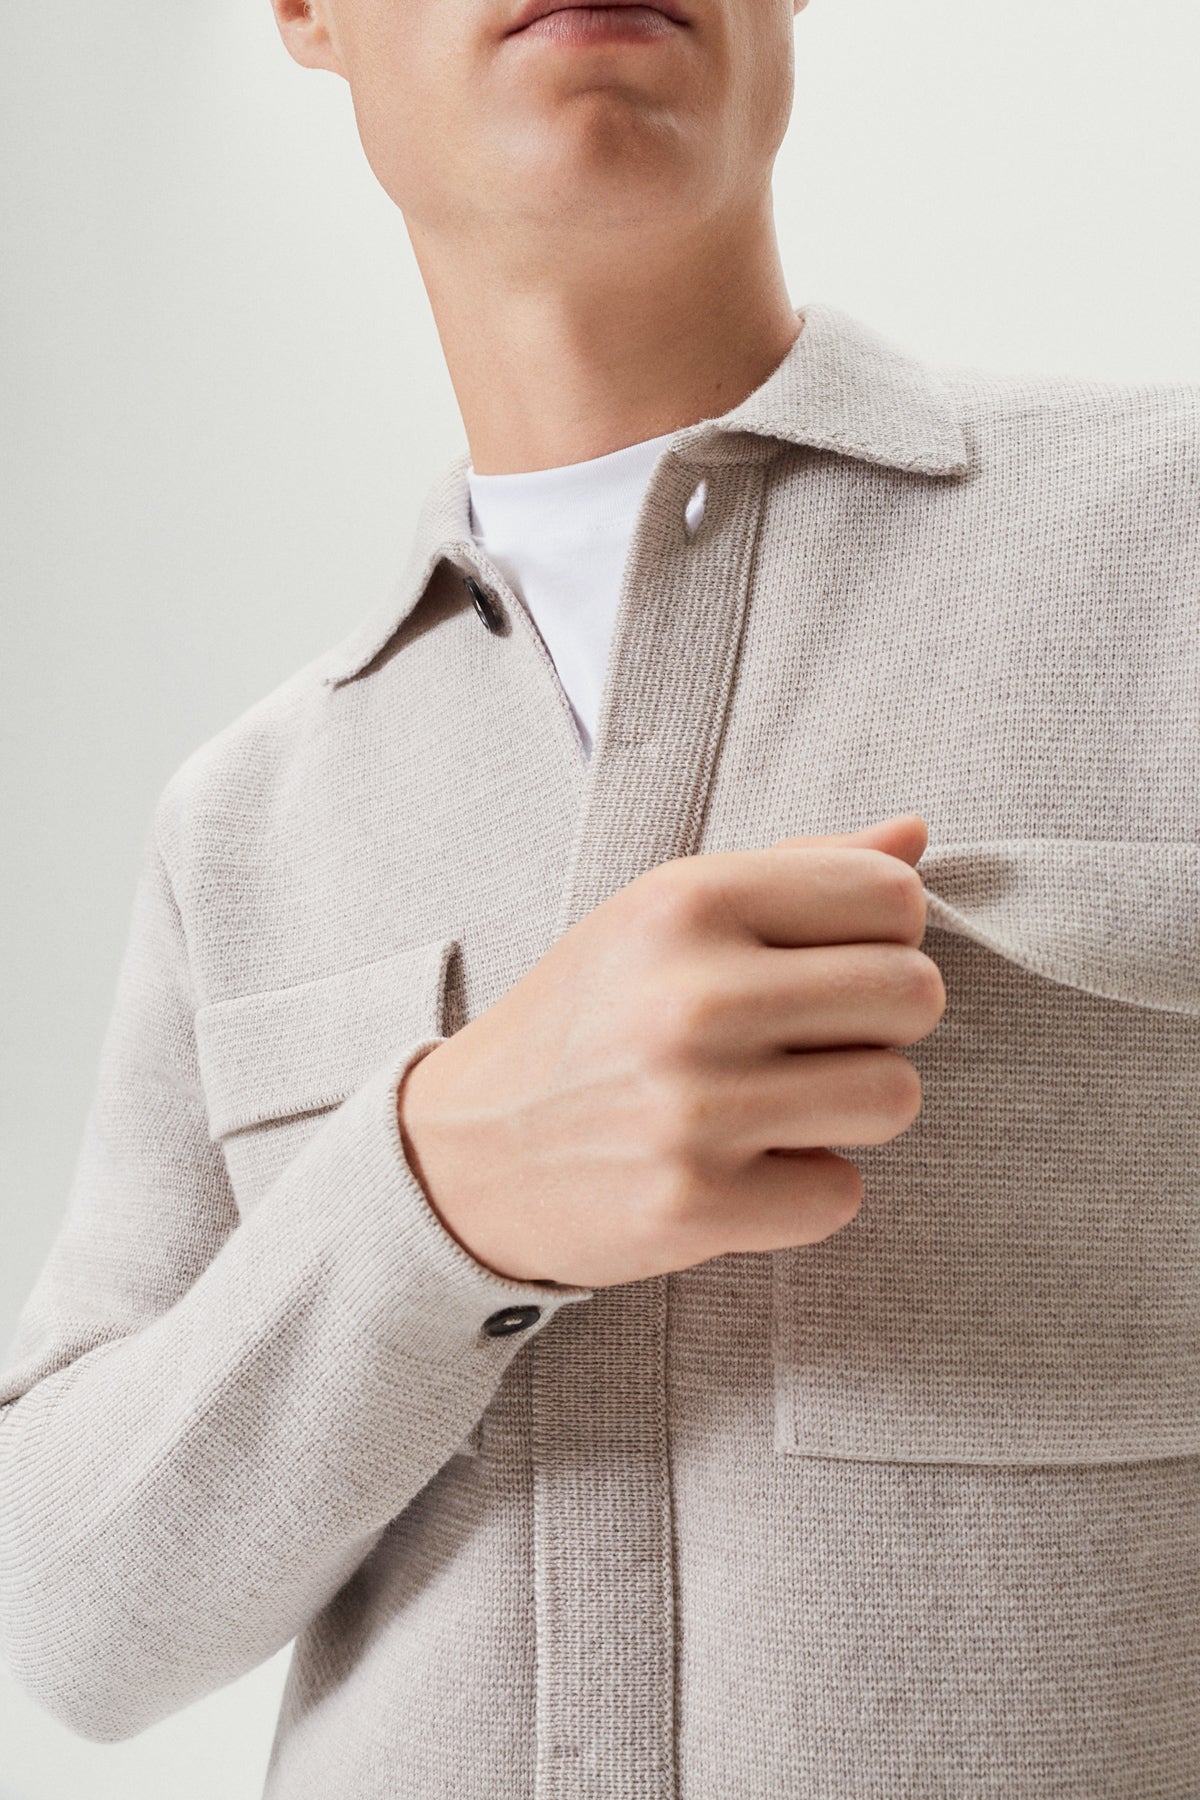 Greige | The Merino Wool Knit Jacket